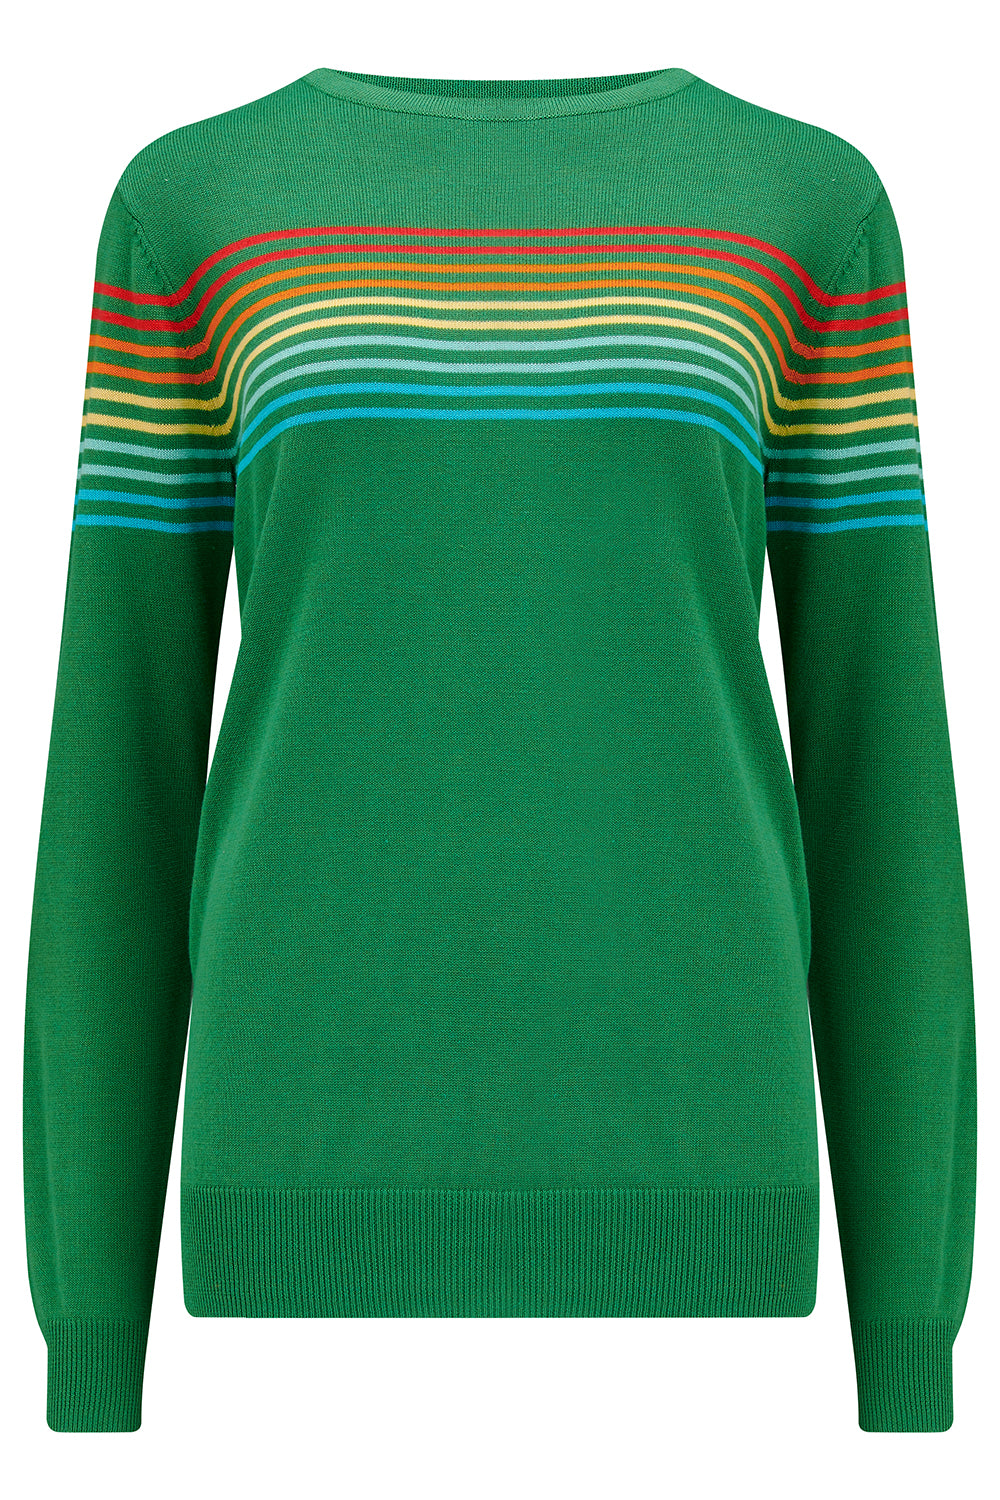 Rita Green Knit | Sugarhill Boutique